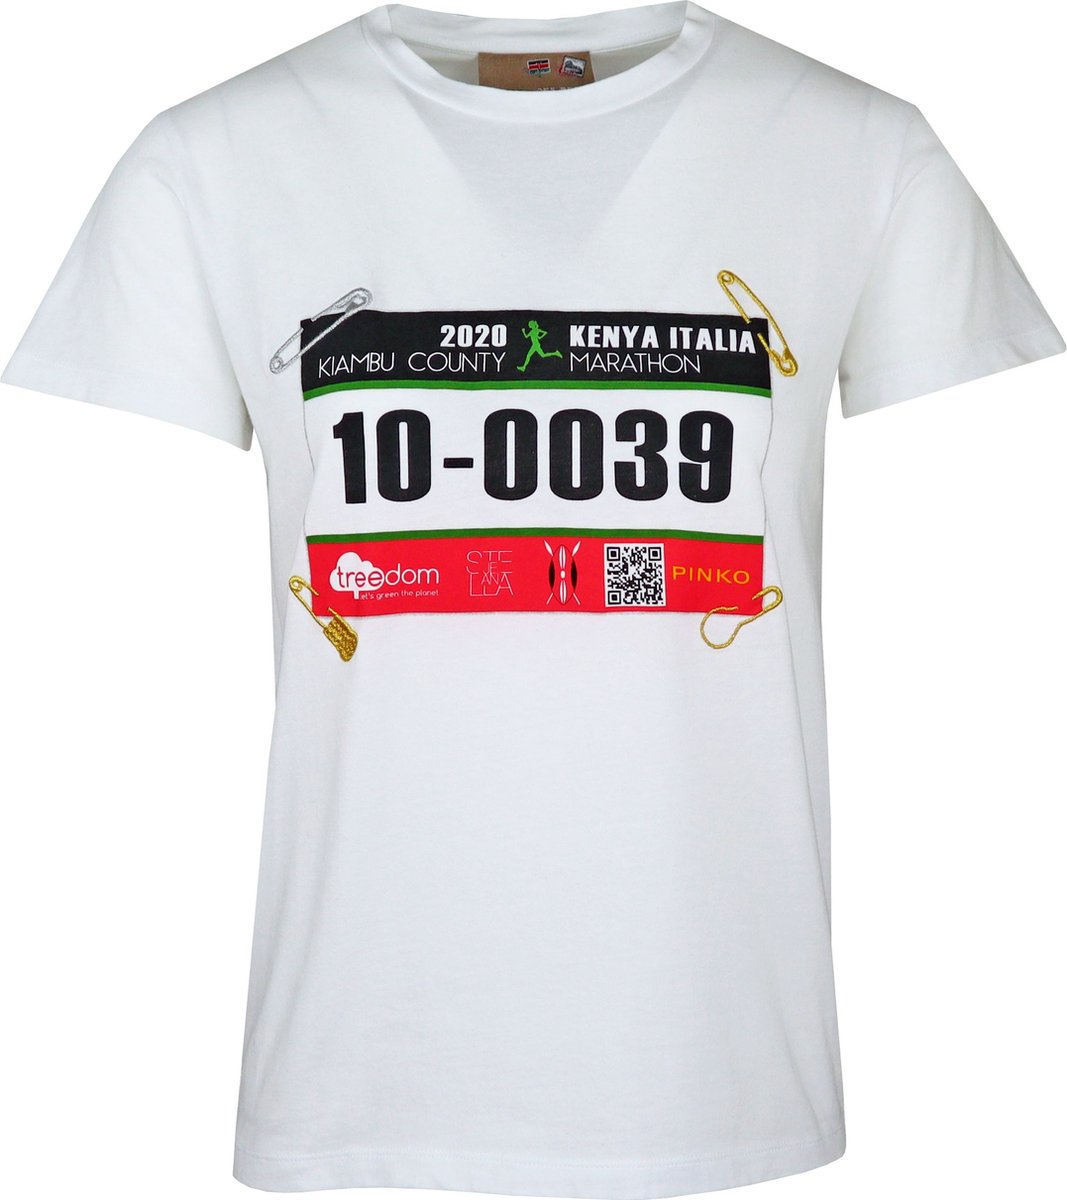 Pinko • wit shirt met marathon nummer • maat XS